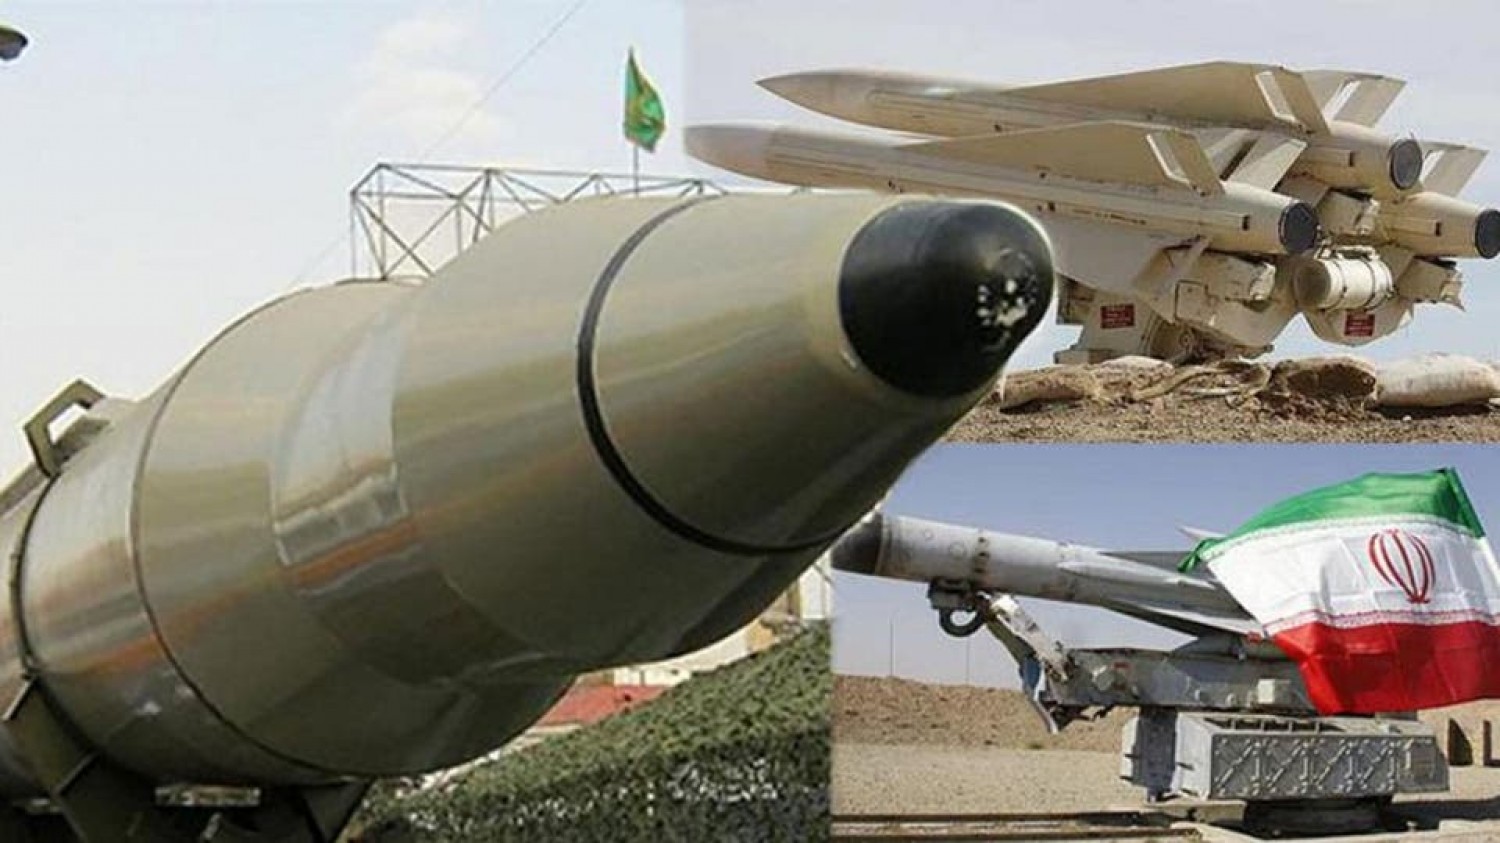 تجهيز مروحيات الجيش الإيراني بصواريخ "أطلق – أنسى".. عودة "شفق" بمدى أكبر ورؤوس حربية أكثر تنوعا+ صور